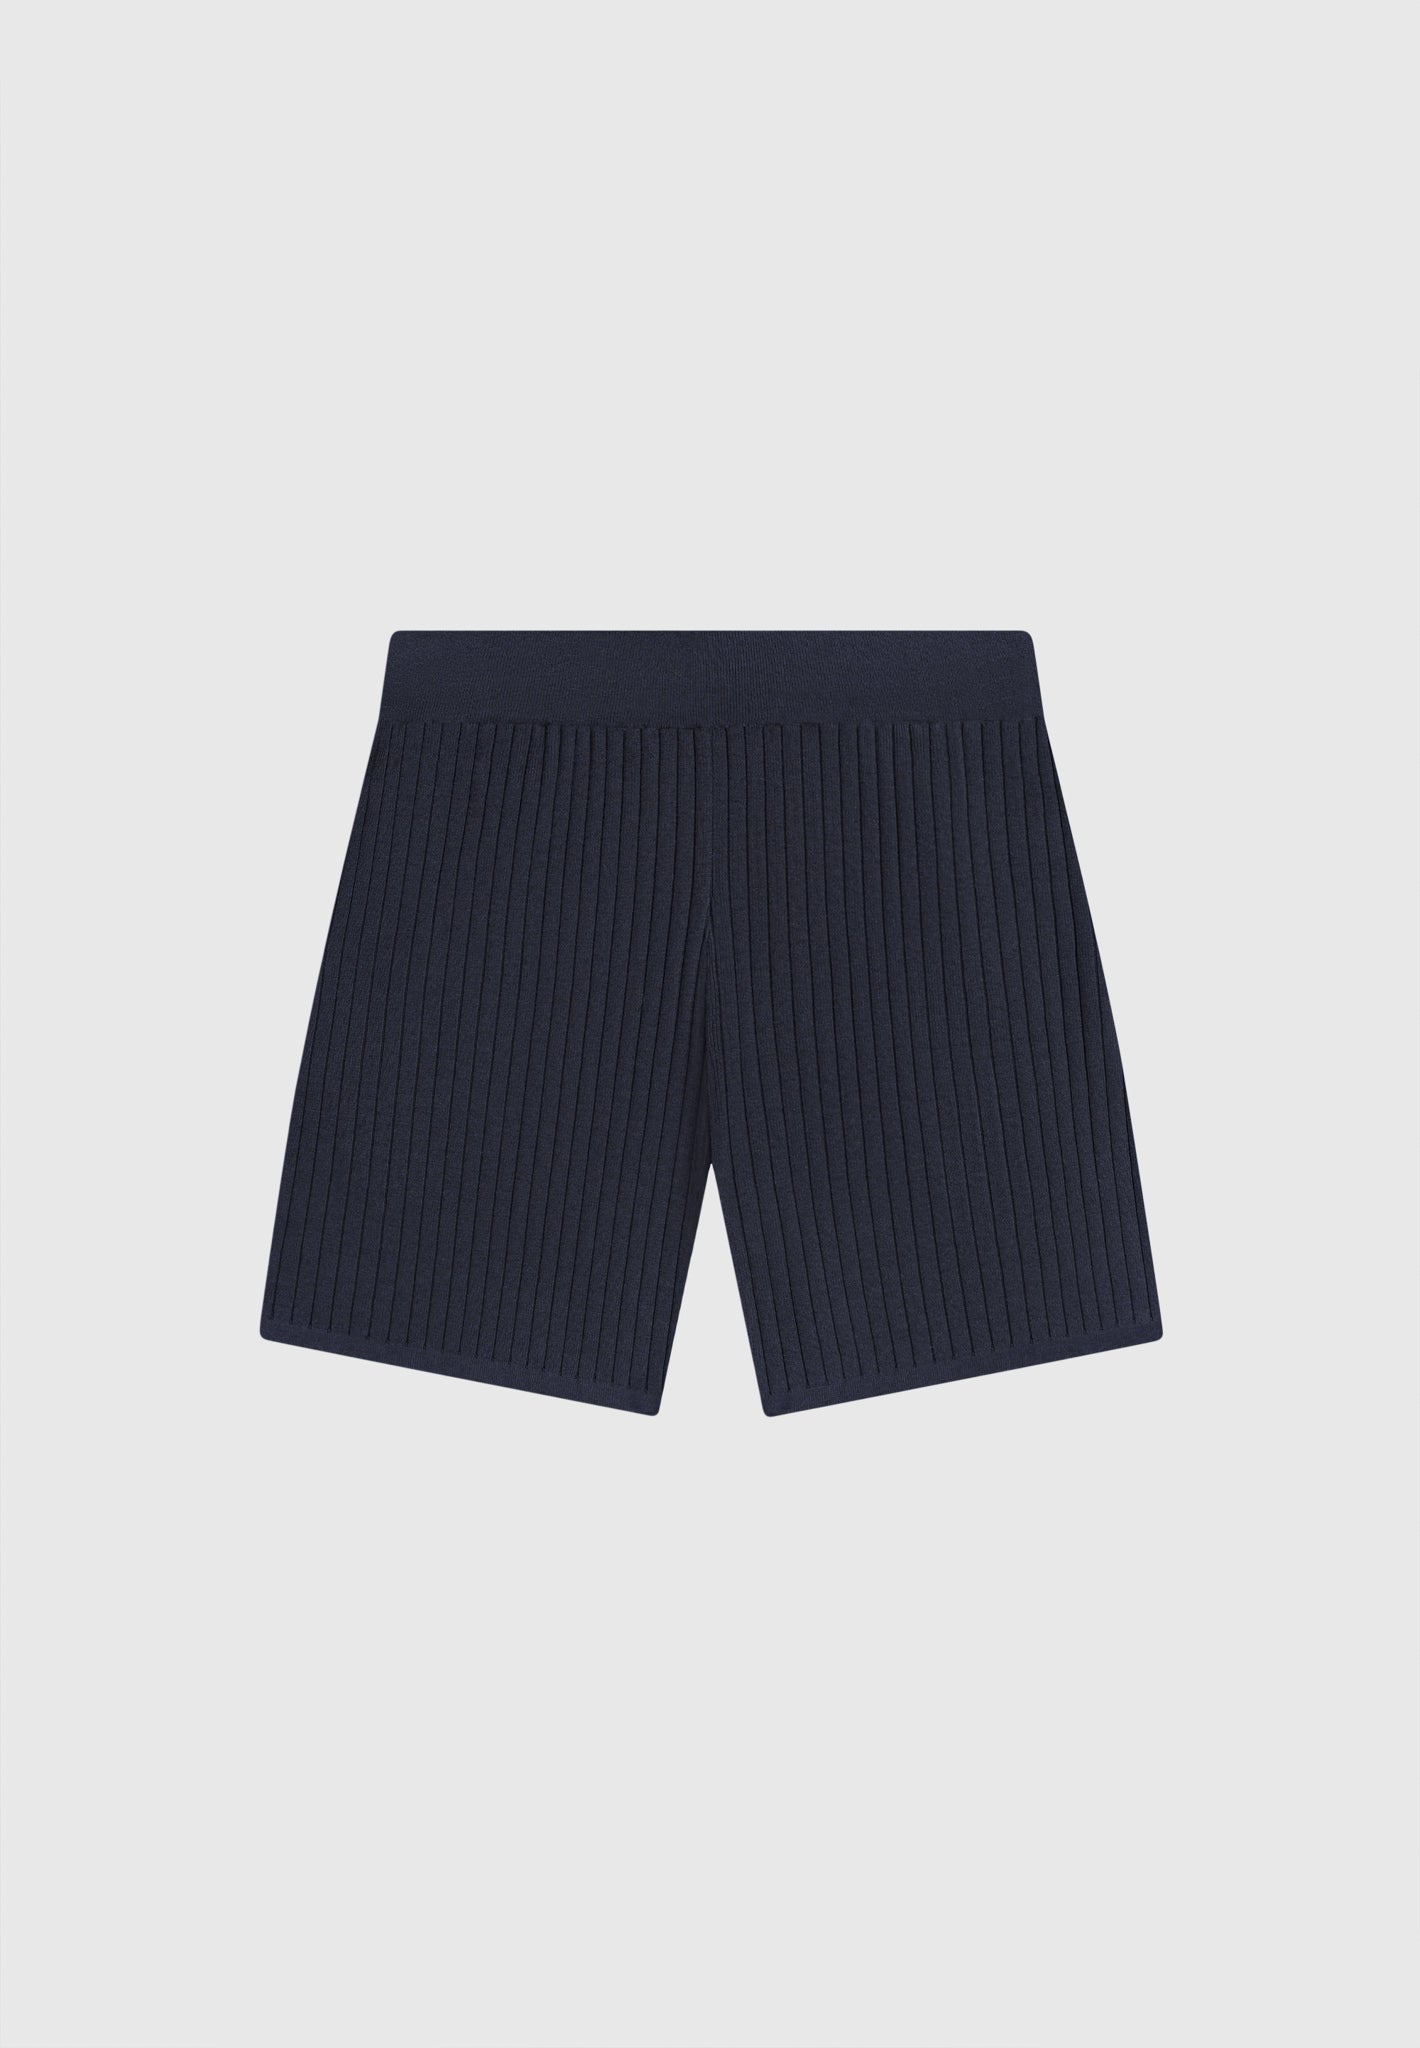 ribbed-knit-shorts-navy